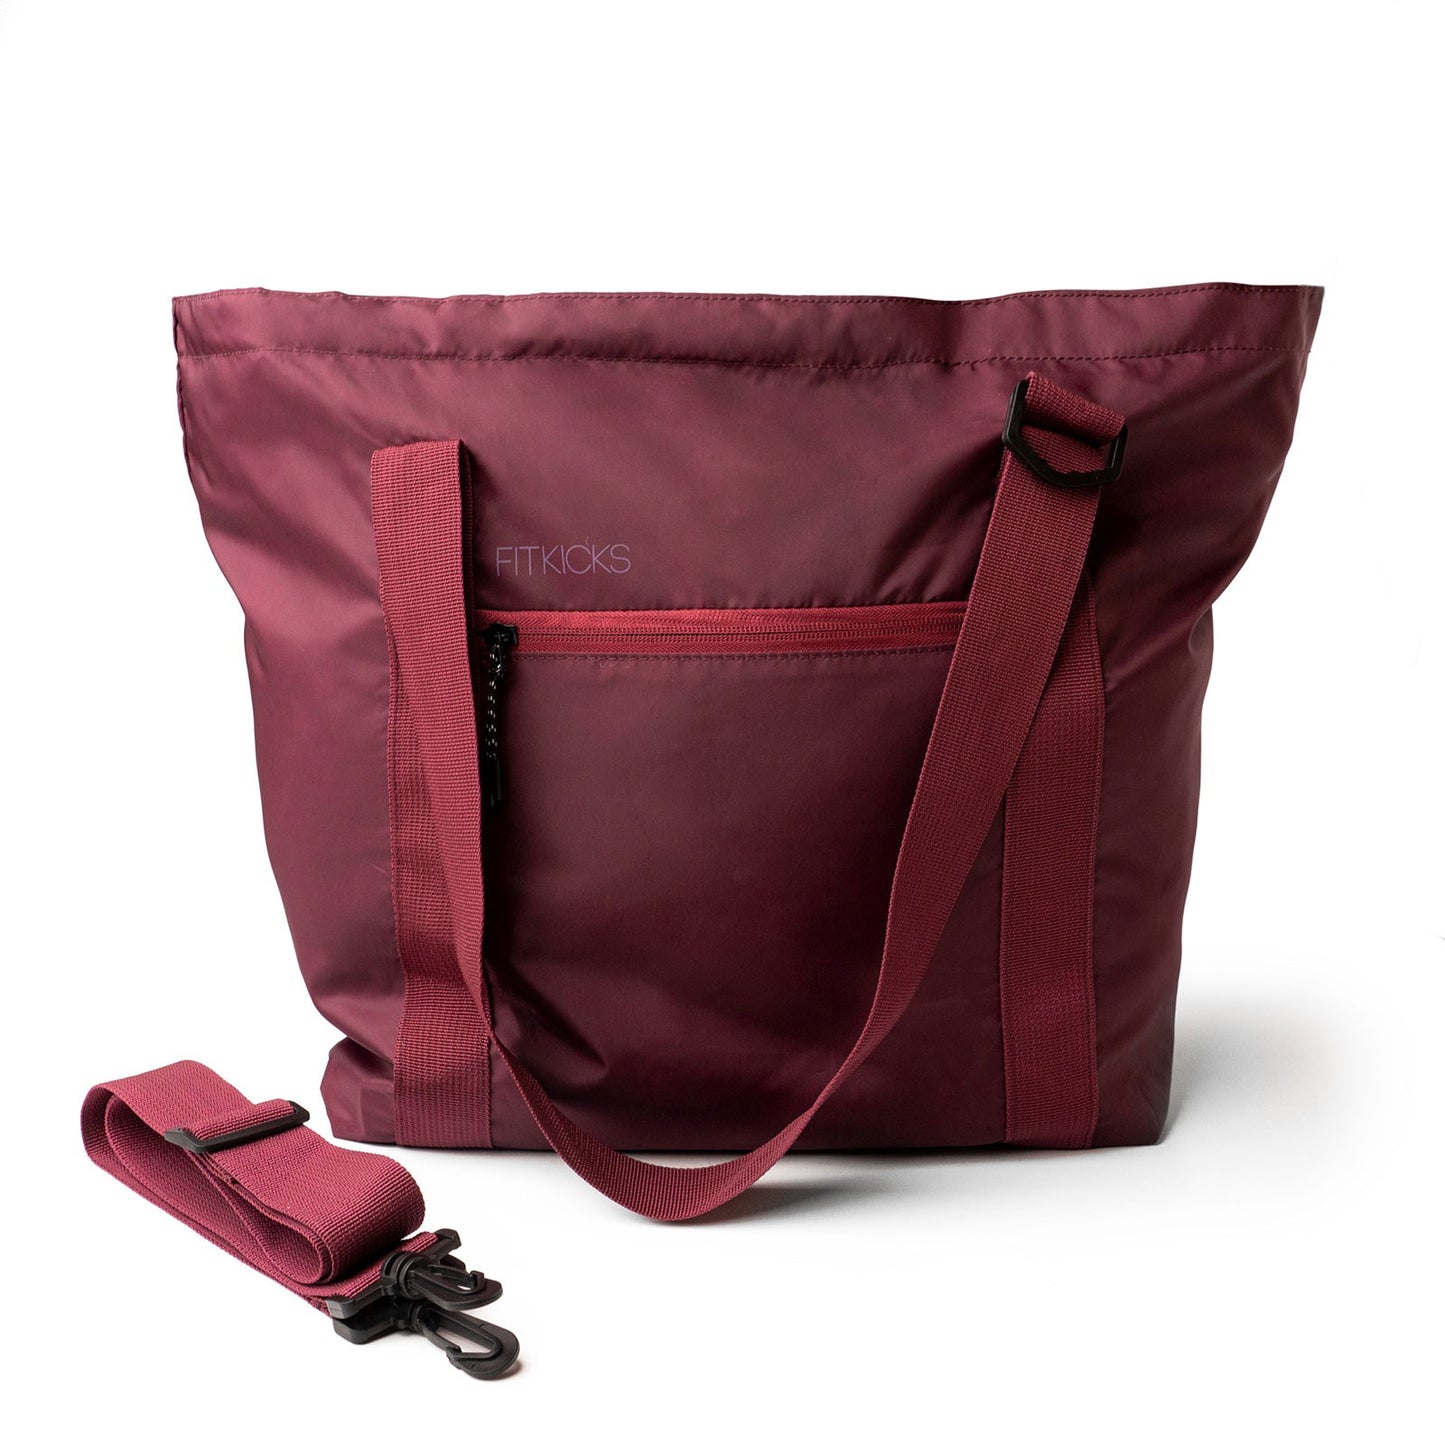 Fitkicks Hideaway Packable Tote Bag